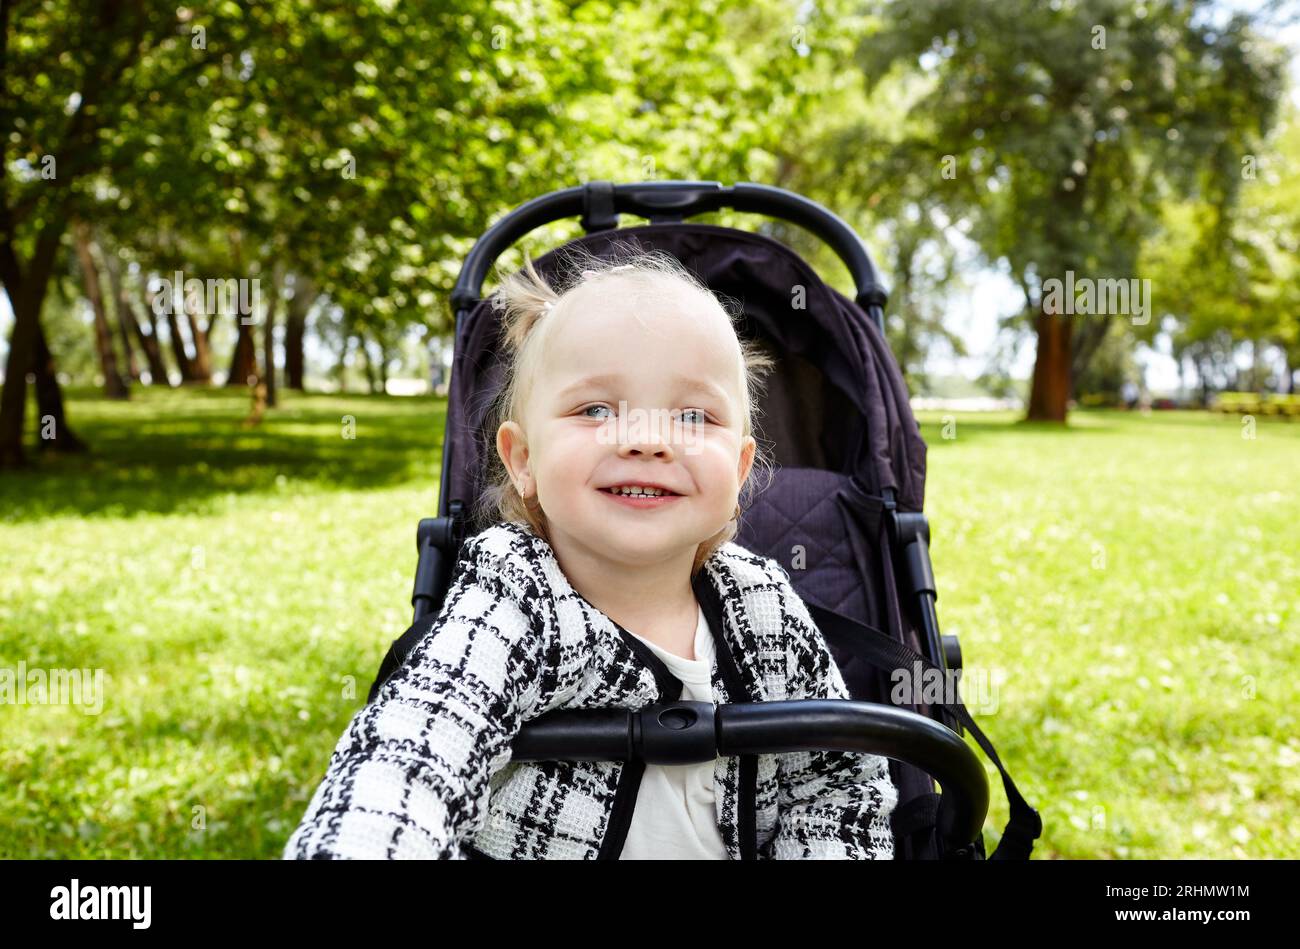 Bébé en poussette sur une promenade dans le parc d'été. Adorable petite fille assise dans une poussette et sourit. Enfant en buggy Banque D'Images